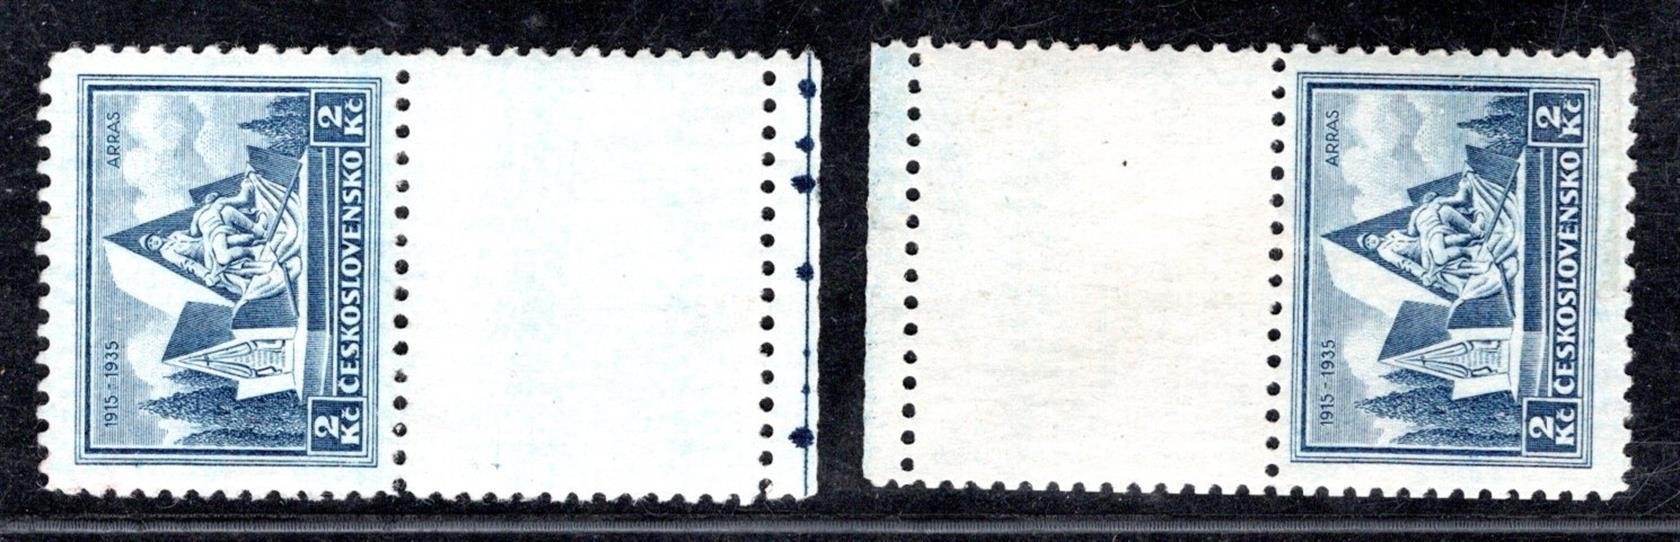 289 - 90, Arras, kupony horní a dolní